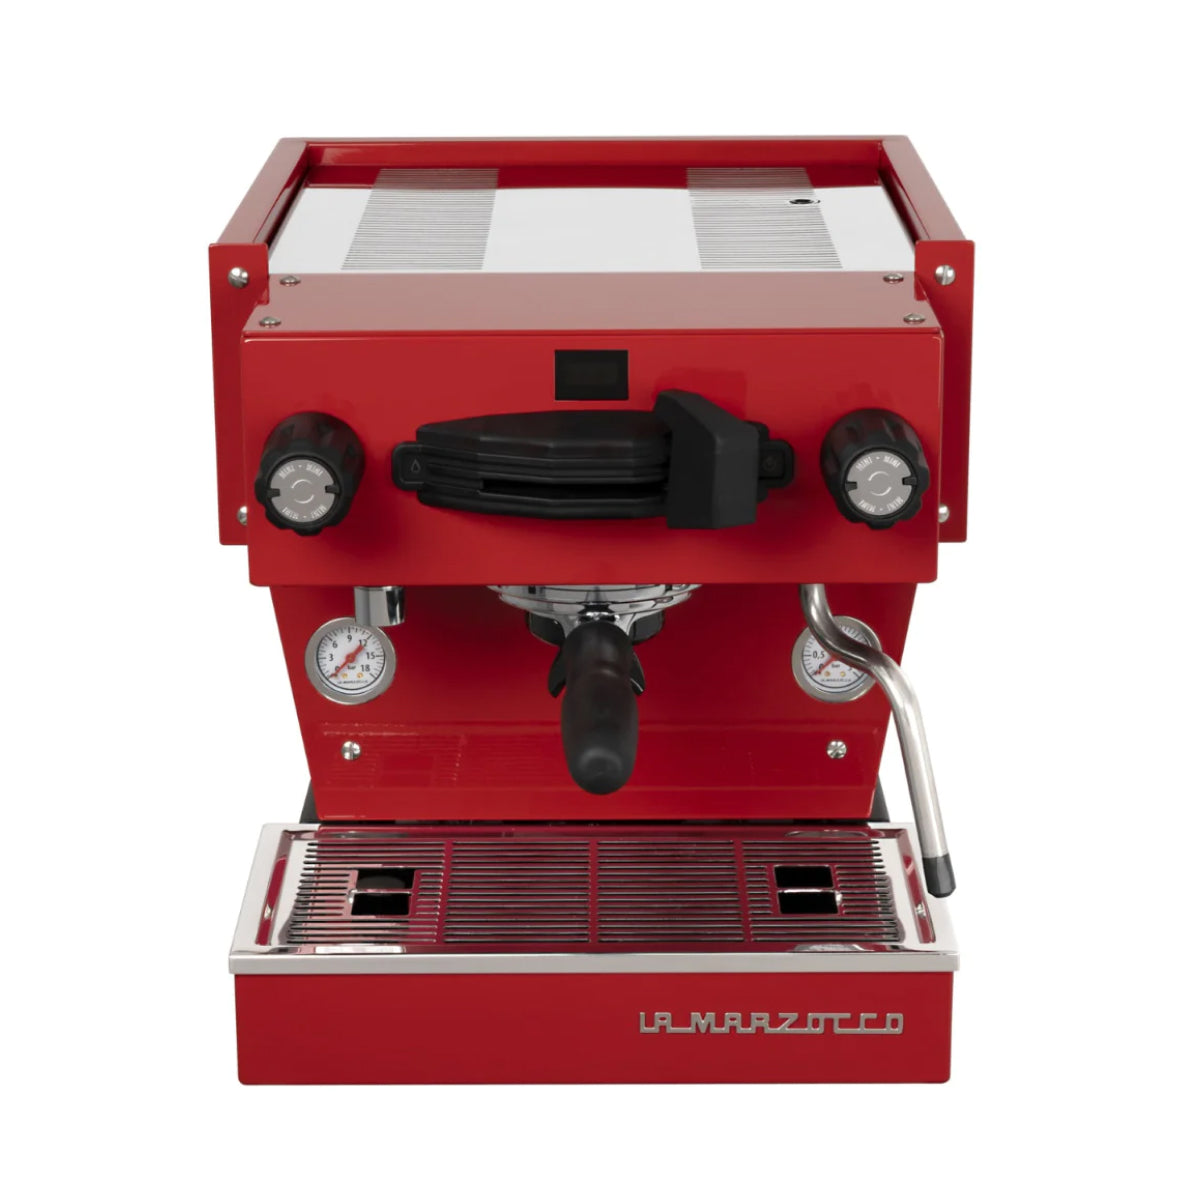 La Marzocco Linea Mini R Espresso Machine